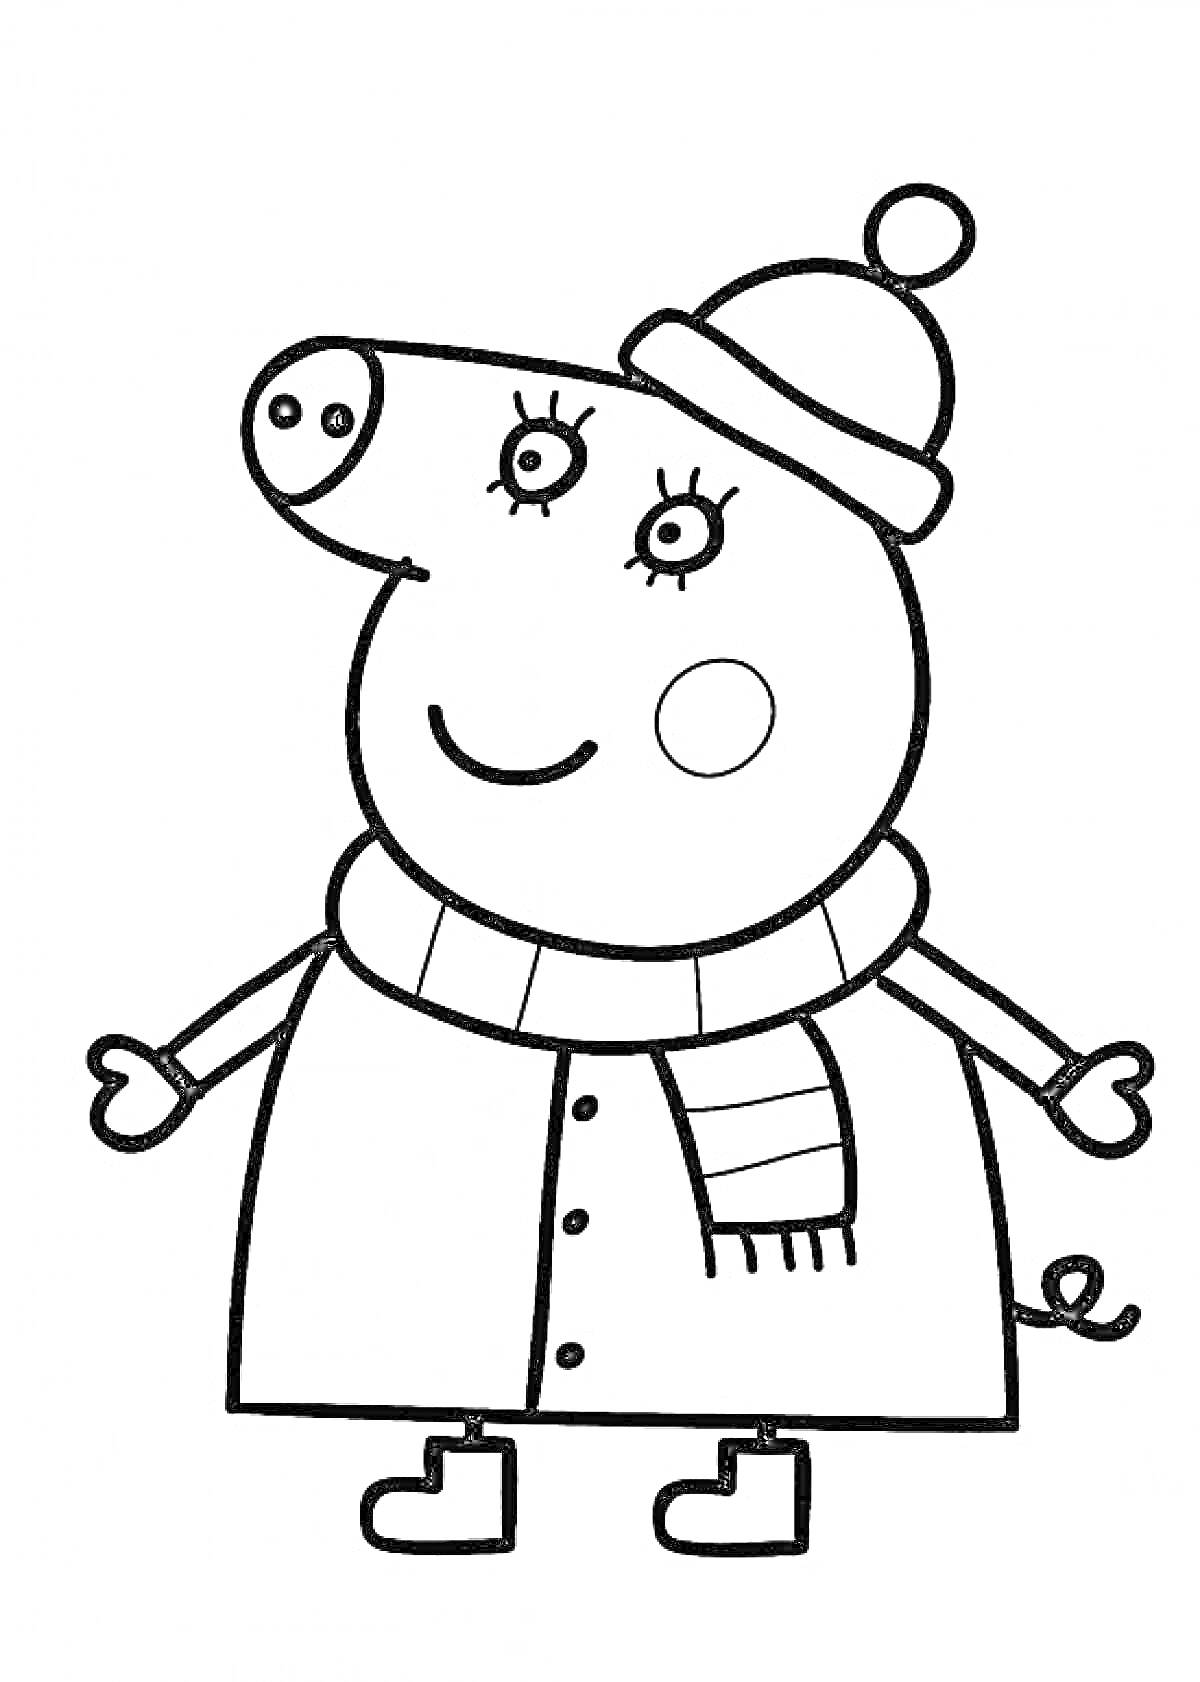 Свинка Пеппа в зимней одежде с шапкой и шарфом